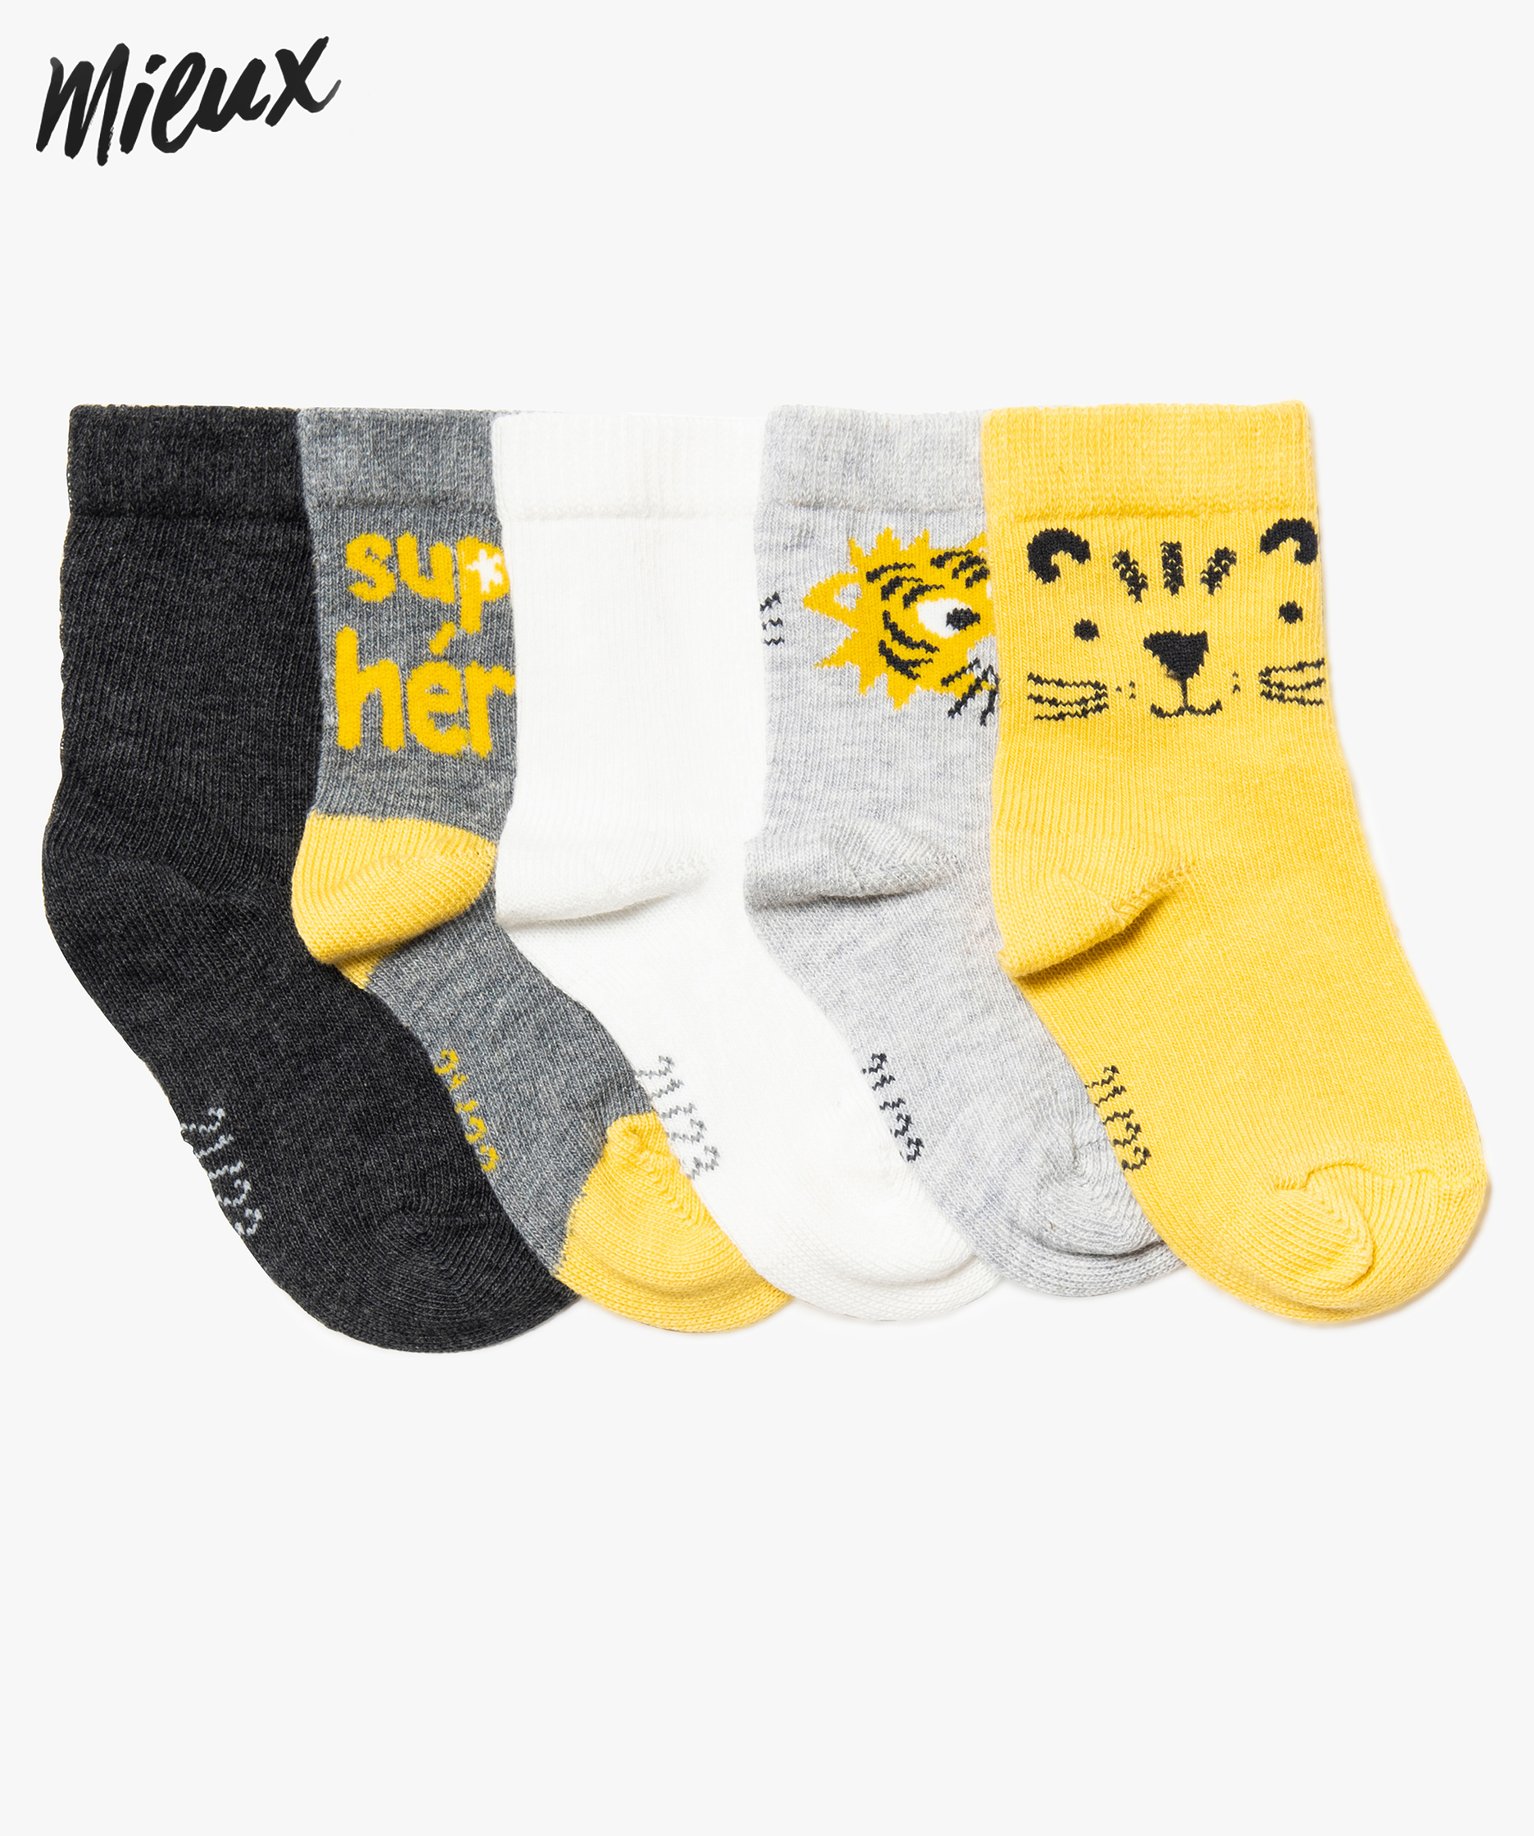 Gemo vetements fille chaussettes bebe garcon (lot de 5 paires) motif animal  en coton bio jaune chaussettes bebe